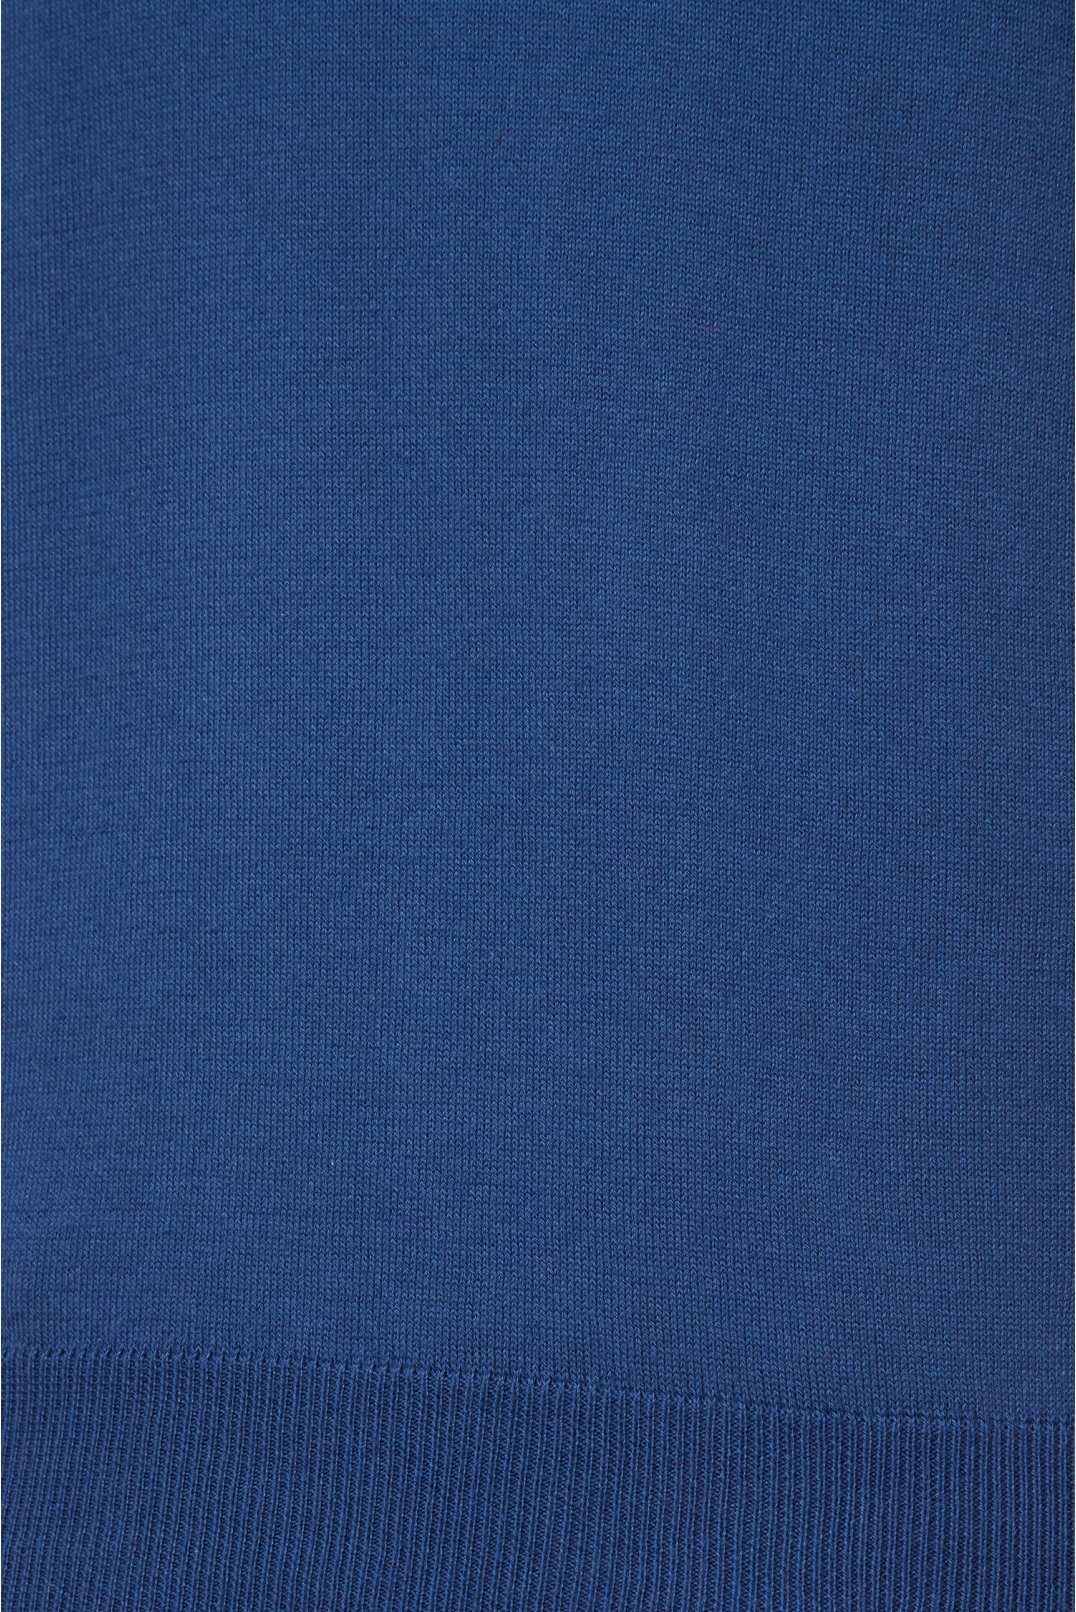 Чоловічий темно-синій джемпер з коротким рукавом - 4